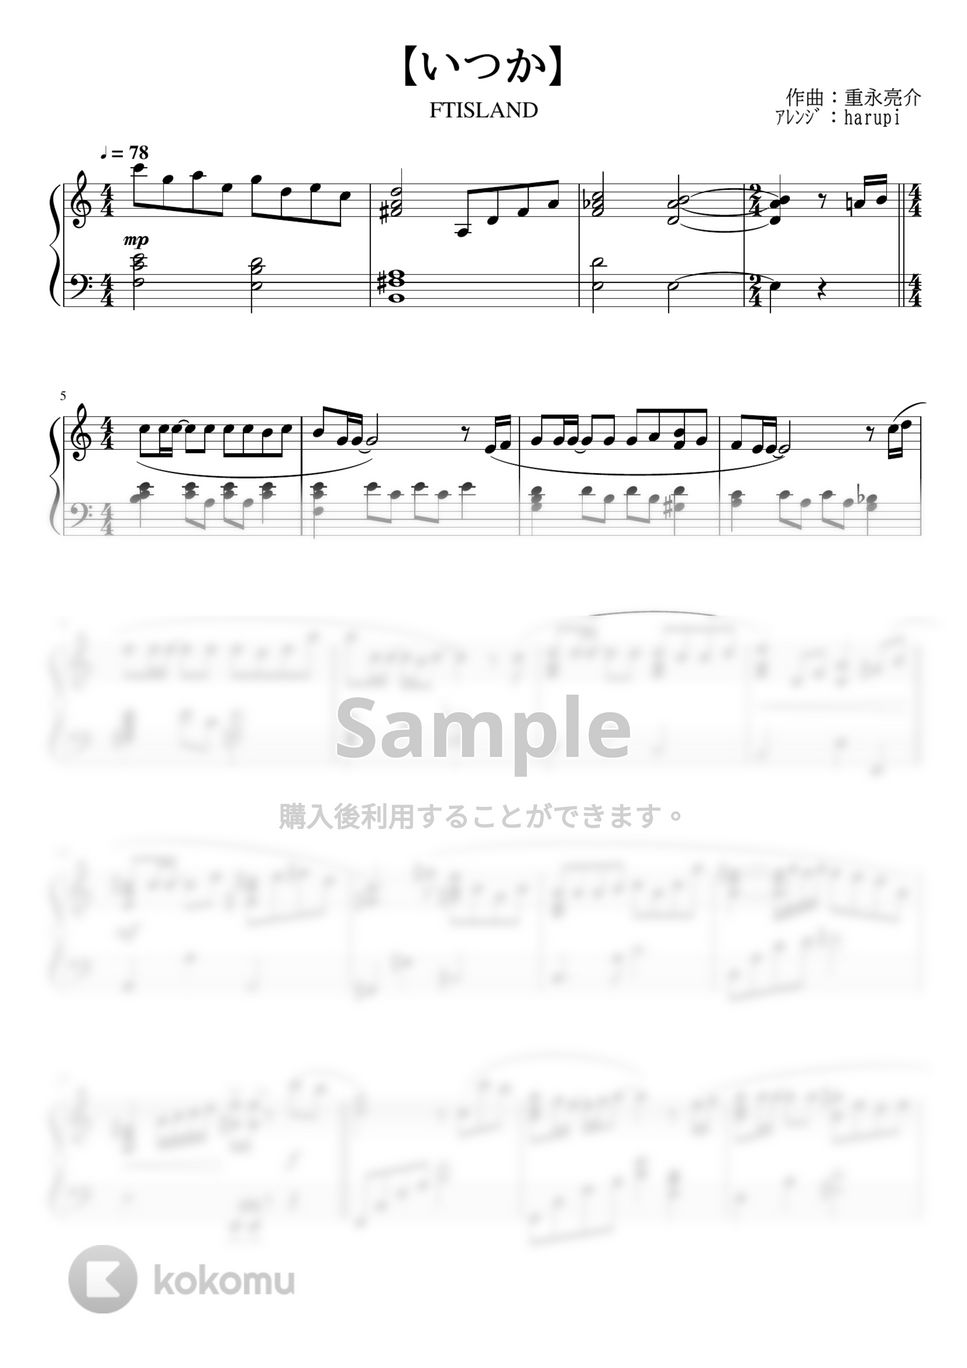 FTISLAND - いつか (ピアノソロ、ハ長調) by harupi